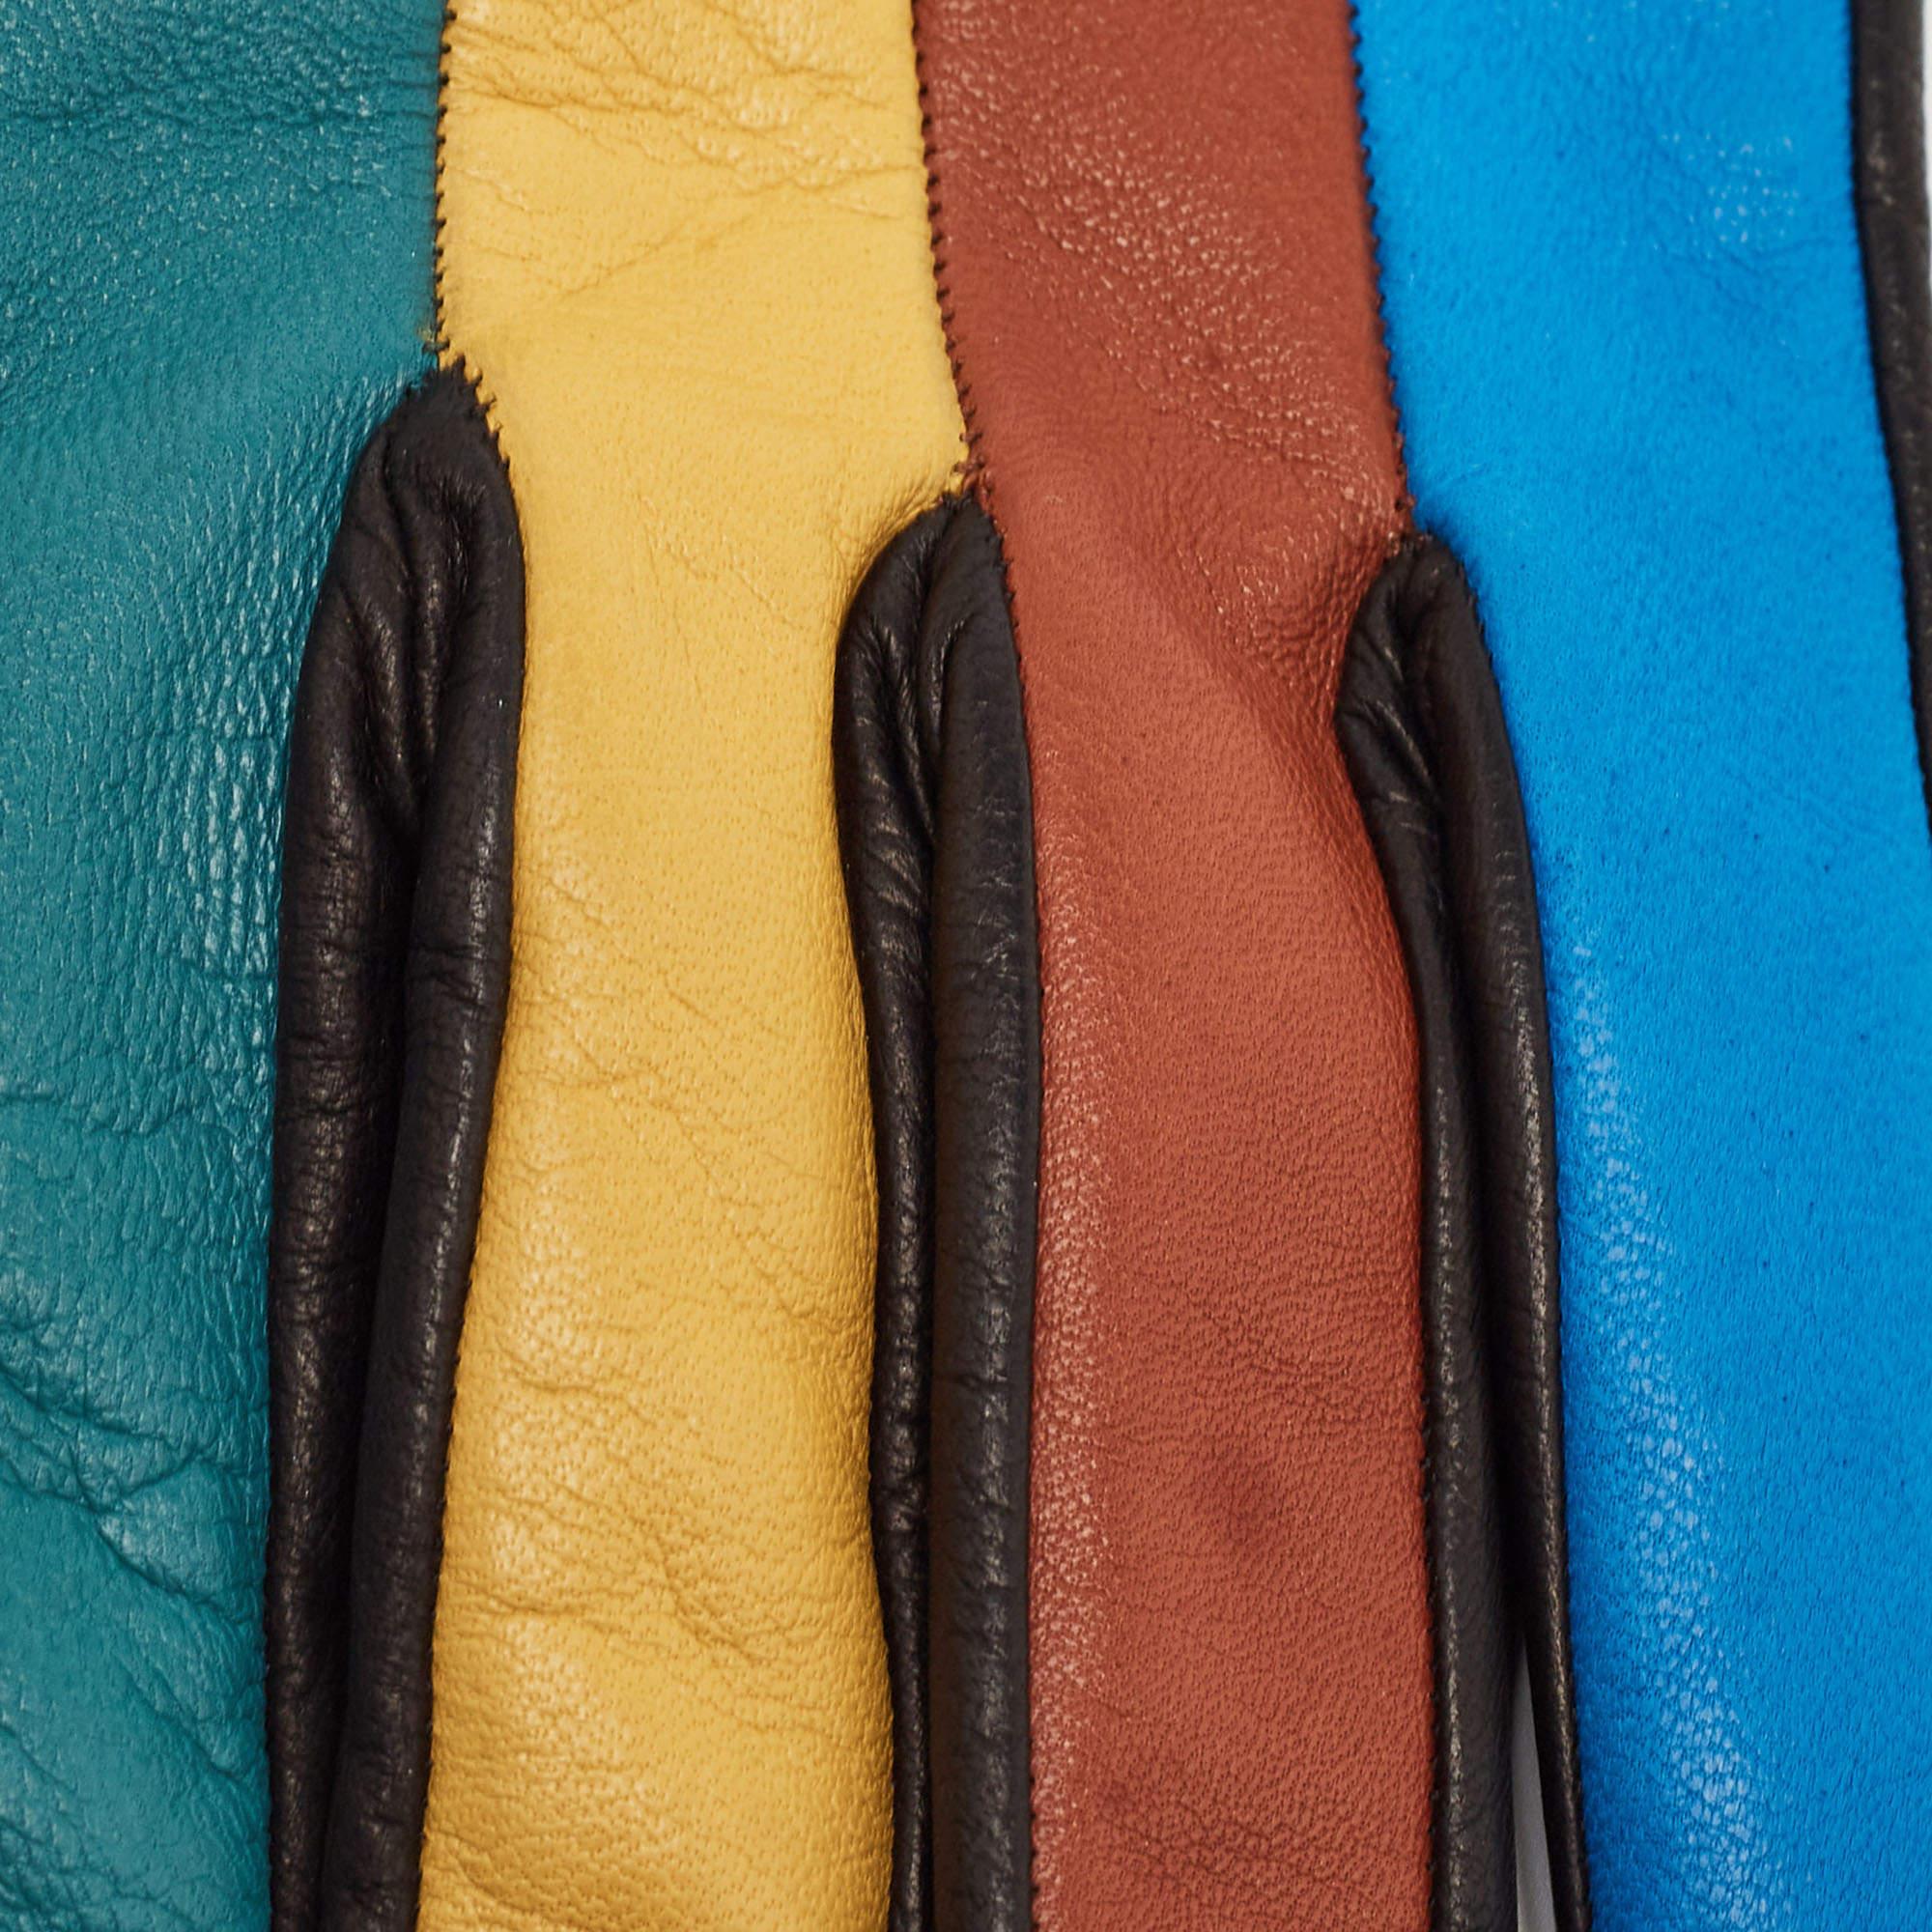 Die aus geschmeidigem Leder gefertigten Missoni Handschuhe sind eine Mischung aus Luxus und Stil. Kräftige Farbtöne treffen in präzisen Blöcken aufeinander und bringen Farbe in winterliche Ensembles. Mit ihrer eng anliegenden Passform und der